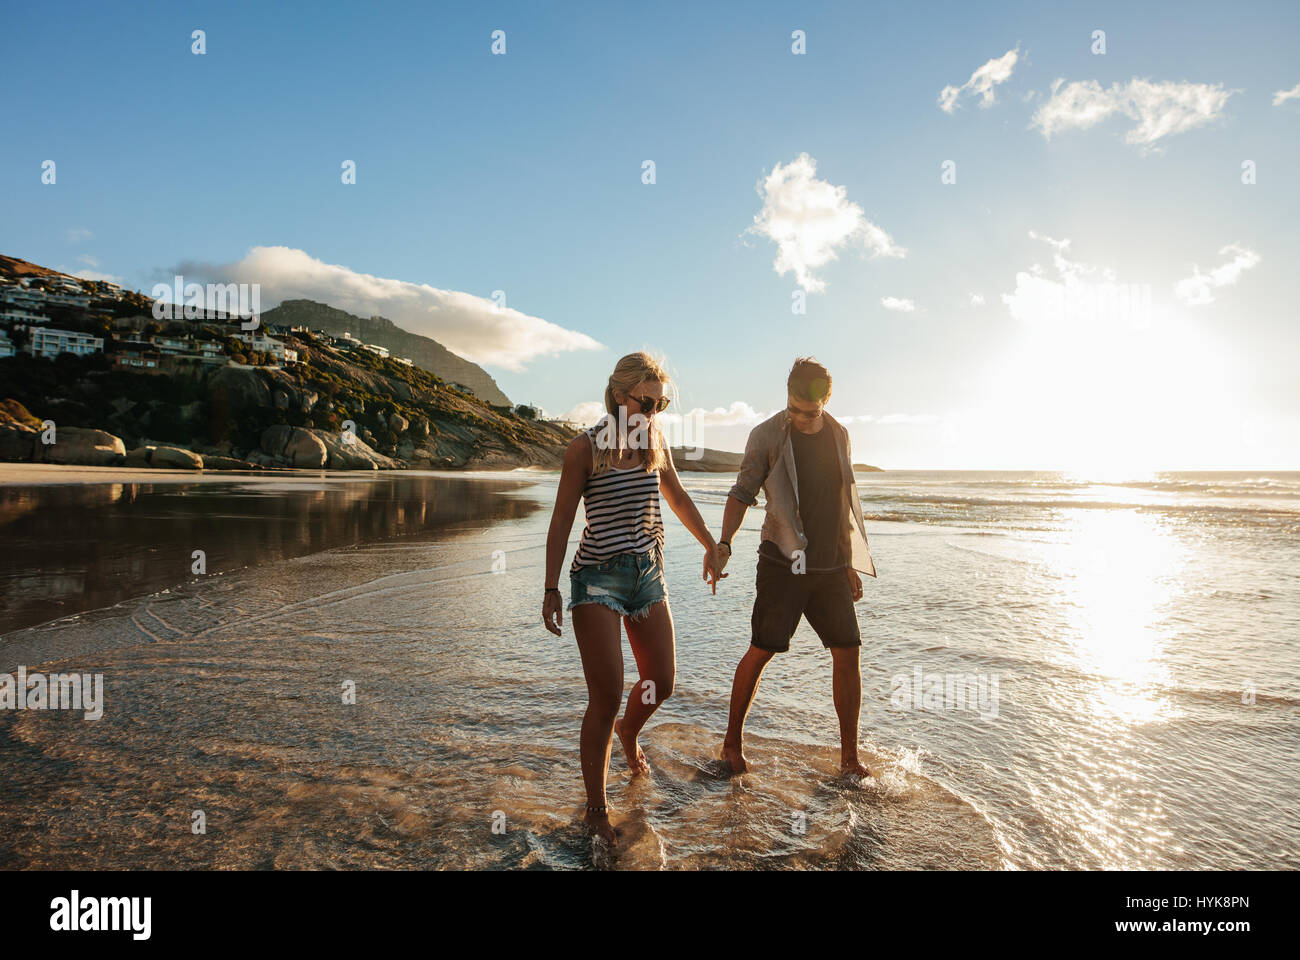 Im Freien Schuss glückliches junges Paar am Strand Hand in Hand. Junger Mann und Frau Strandurlaub zu genießen. Stockfoto